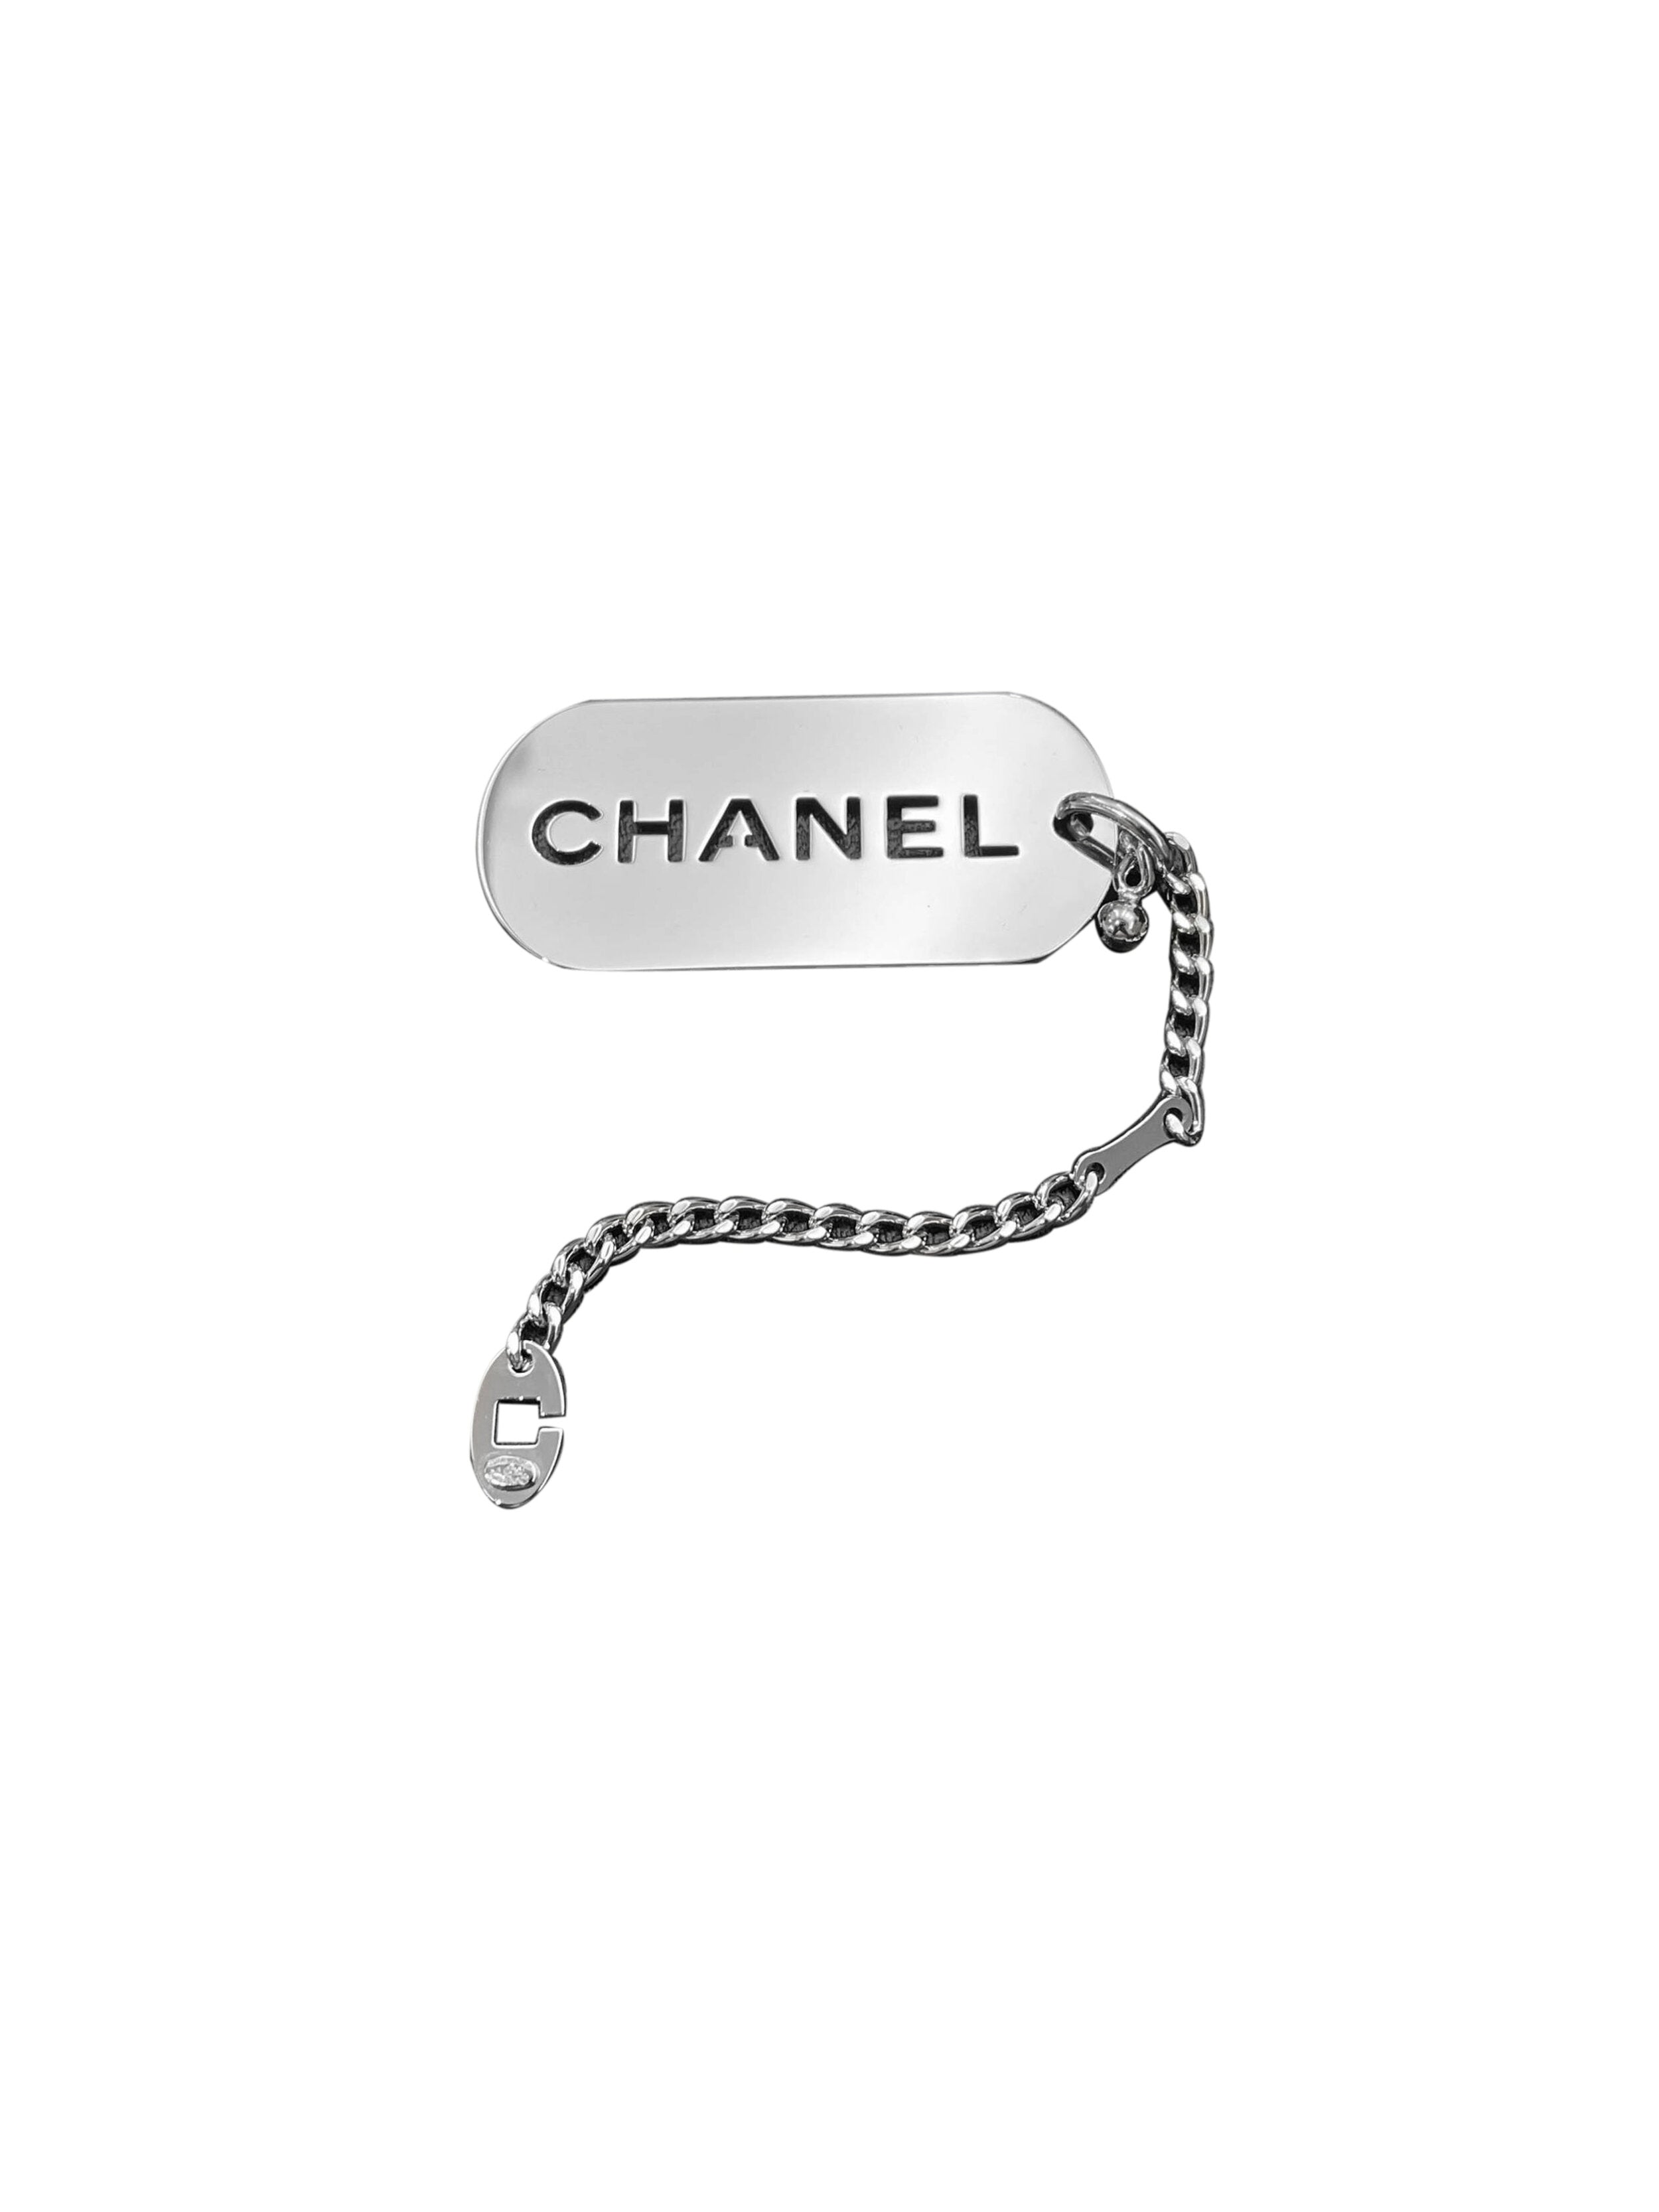 Chanel Silver Tag Keychain Charm